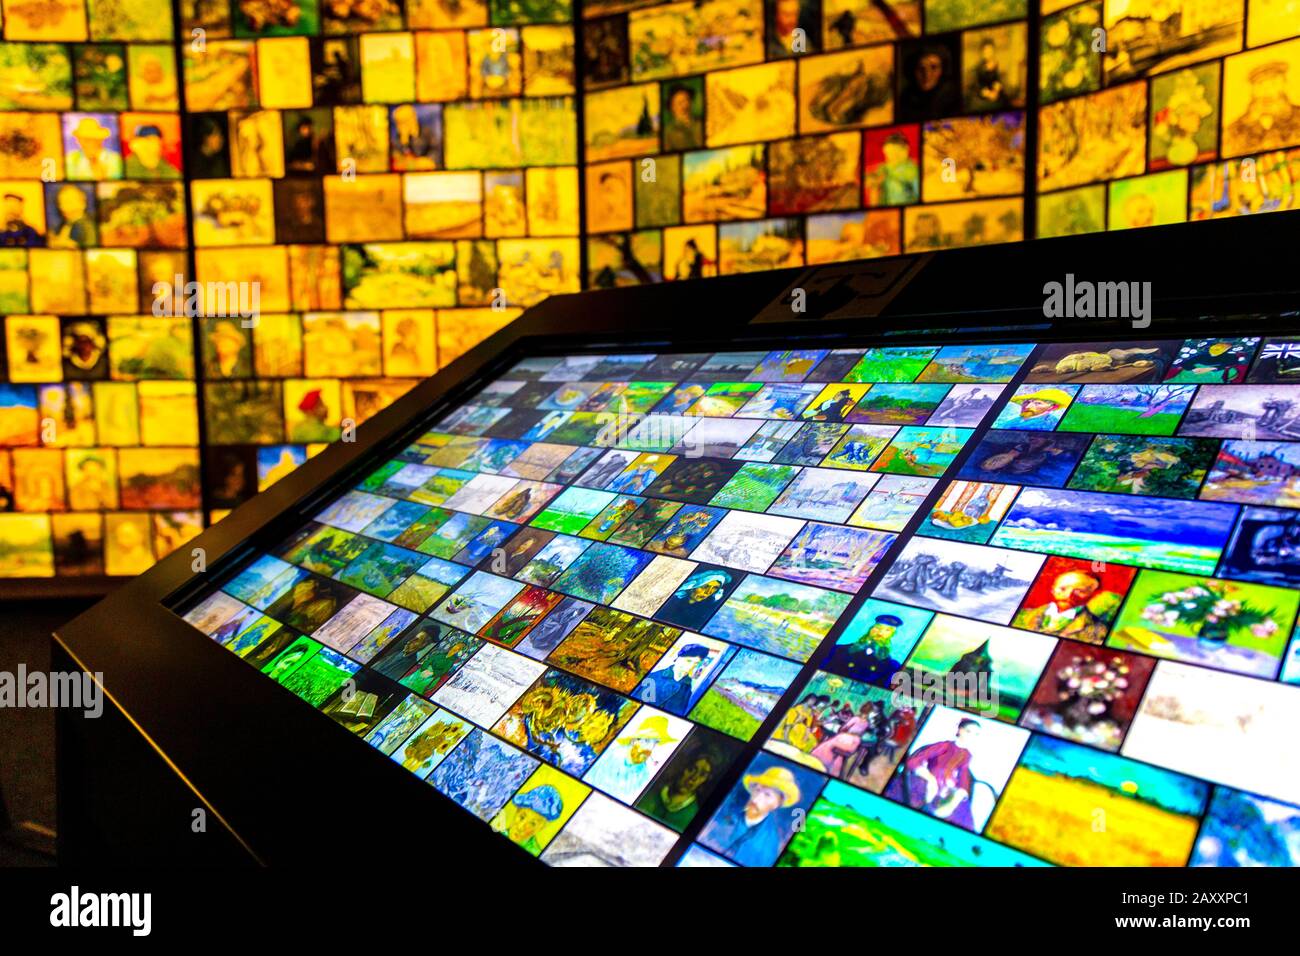 Ecran interactif lors d'une exposition numérique, Rencontrez Vincent van Gogh Experience 2020, Londres, Royaume-Uni Banque D'Images